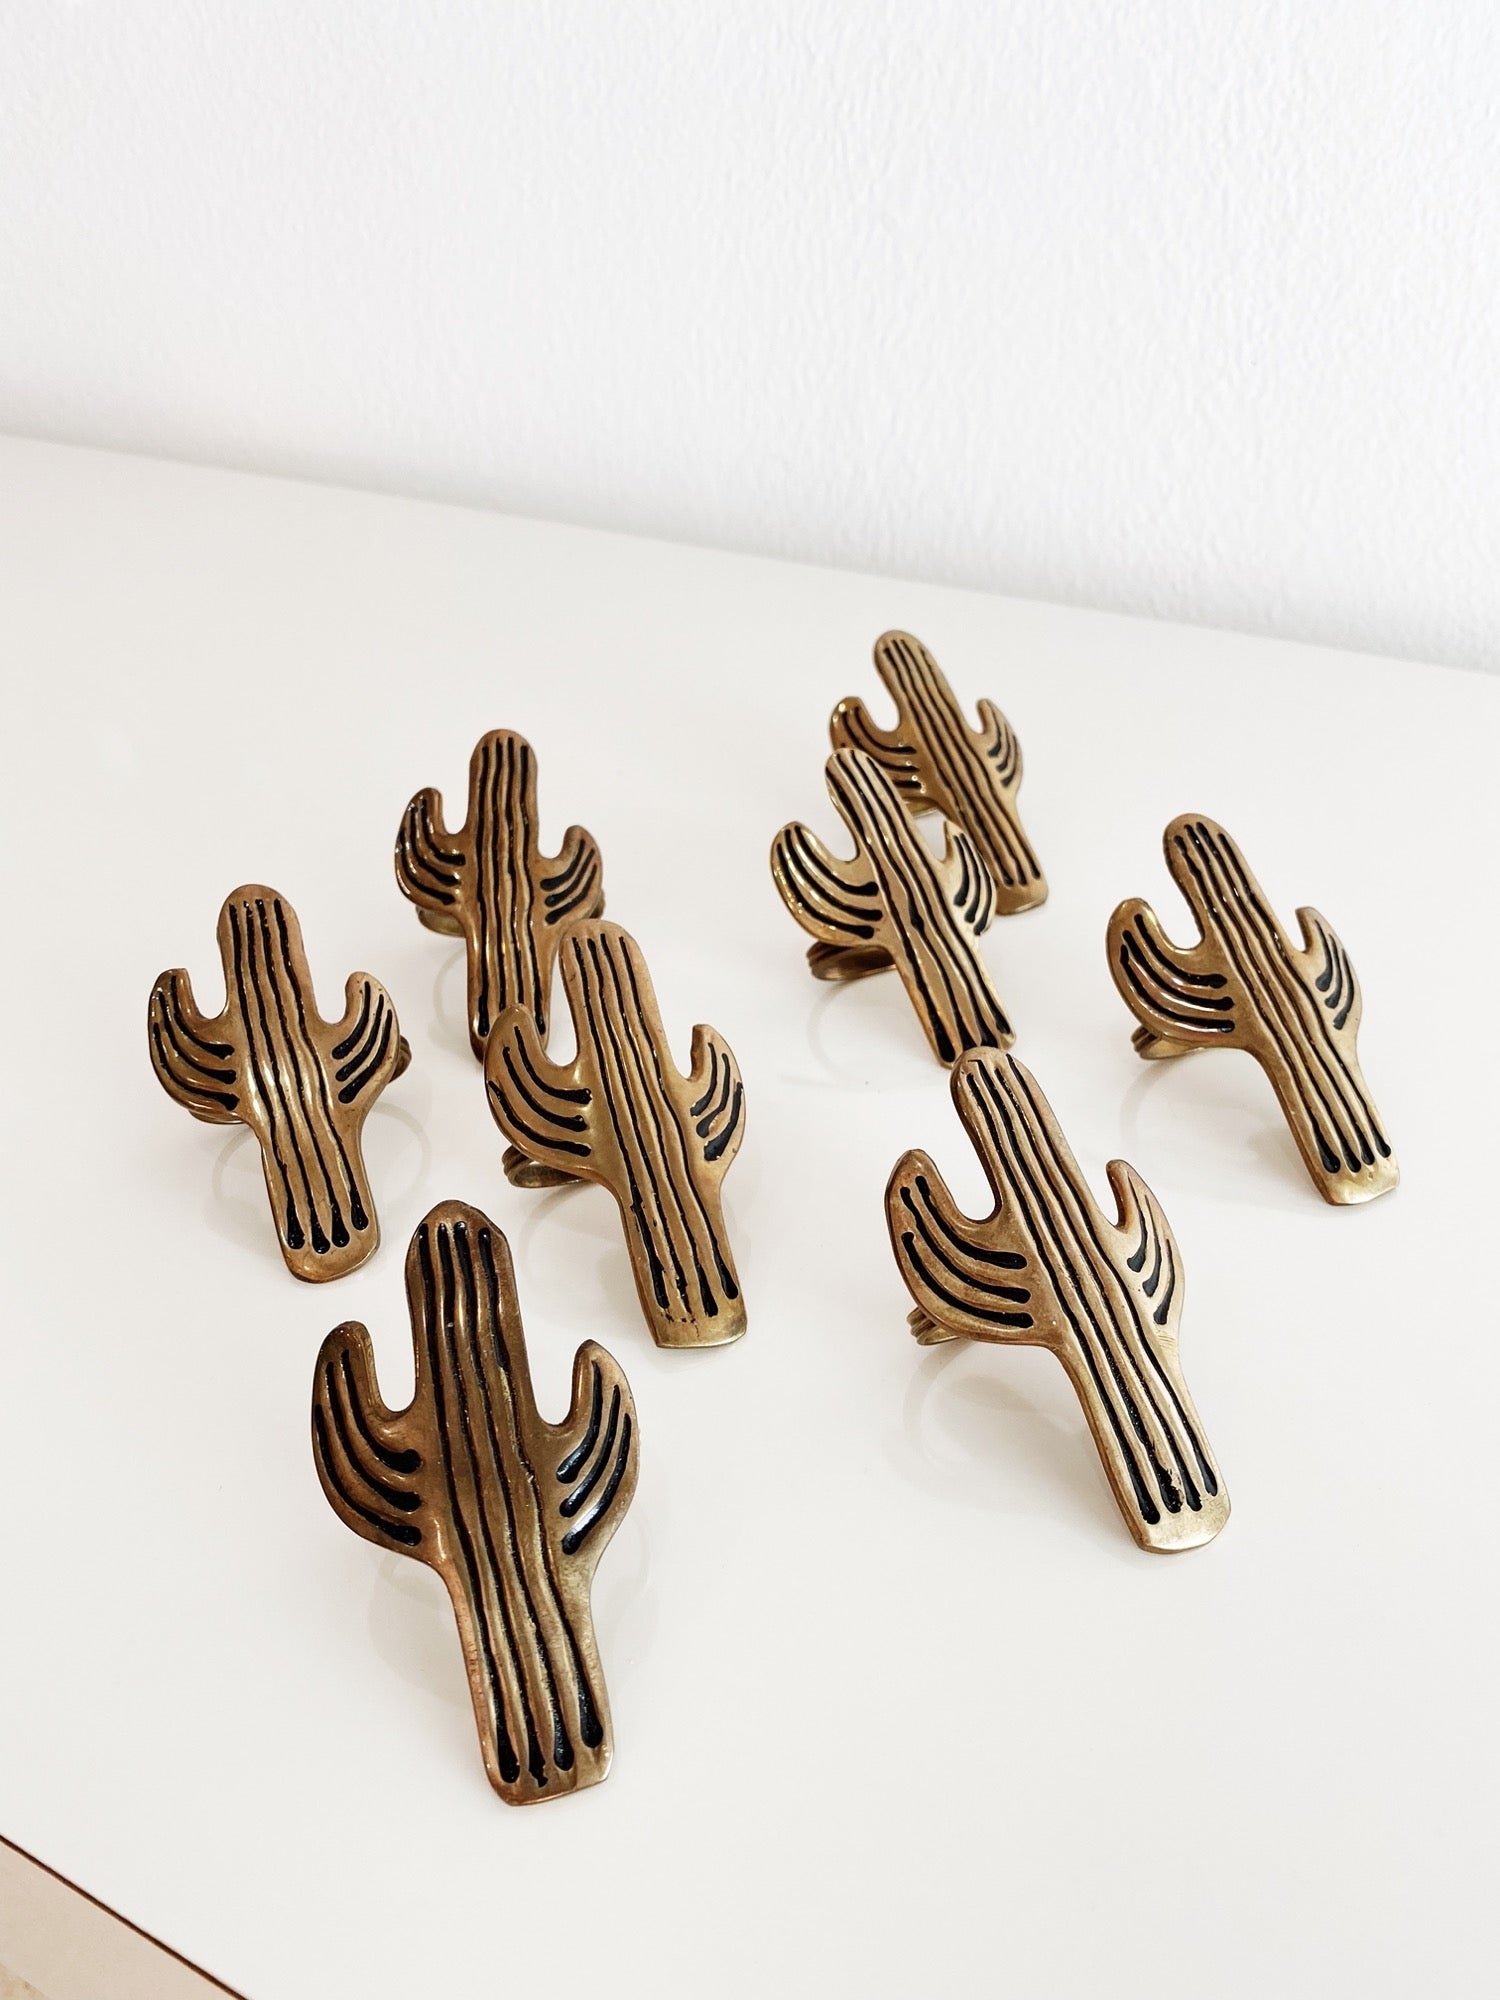 Saguaro Cactus Metal Napkin Rings (Set of 8) - Rehaus